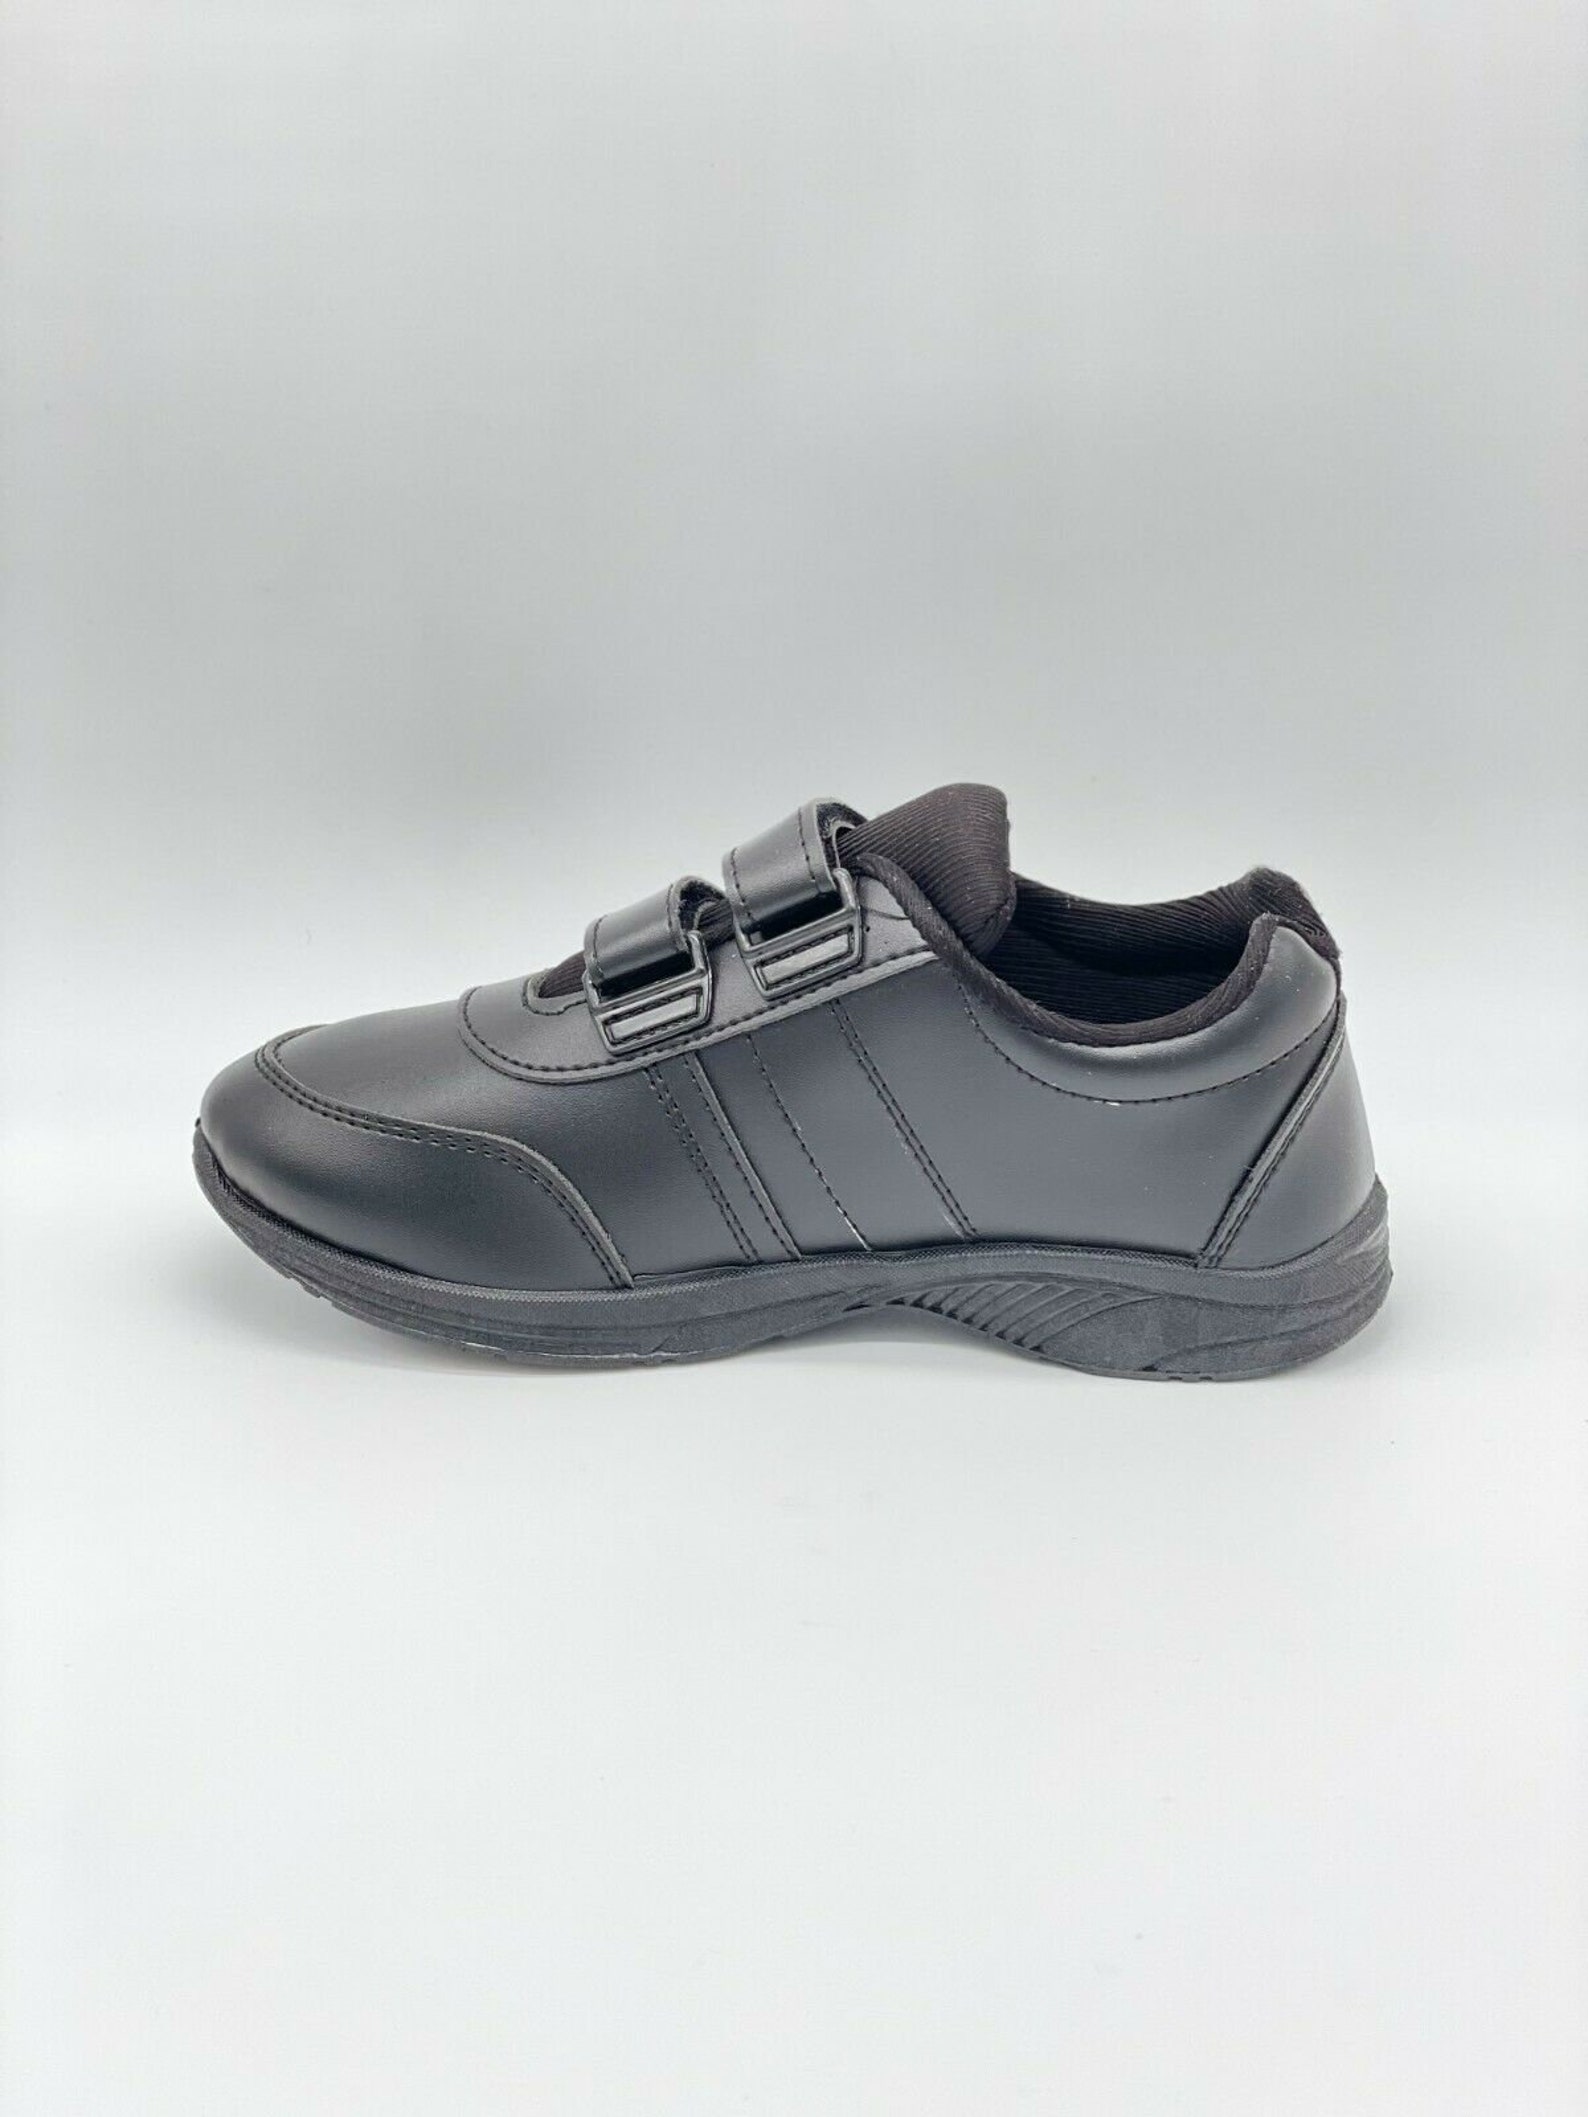 SCHOOLSHOE New BOYSKIDS Smart BLACK School Shoes Casual Shoes | Etsy